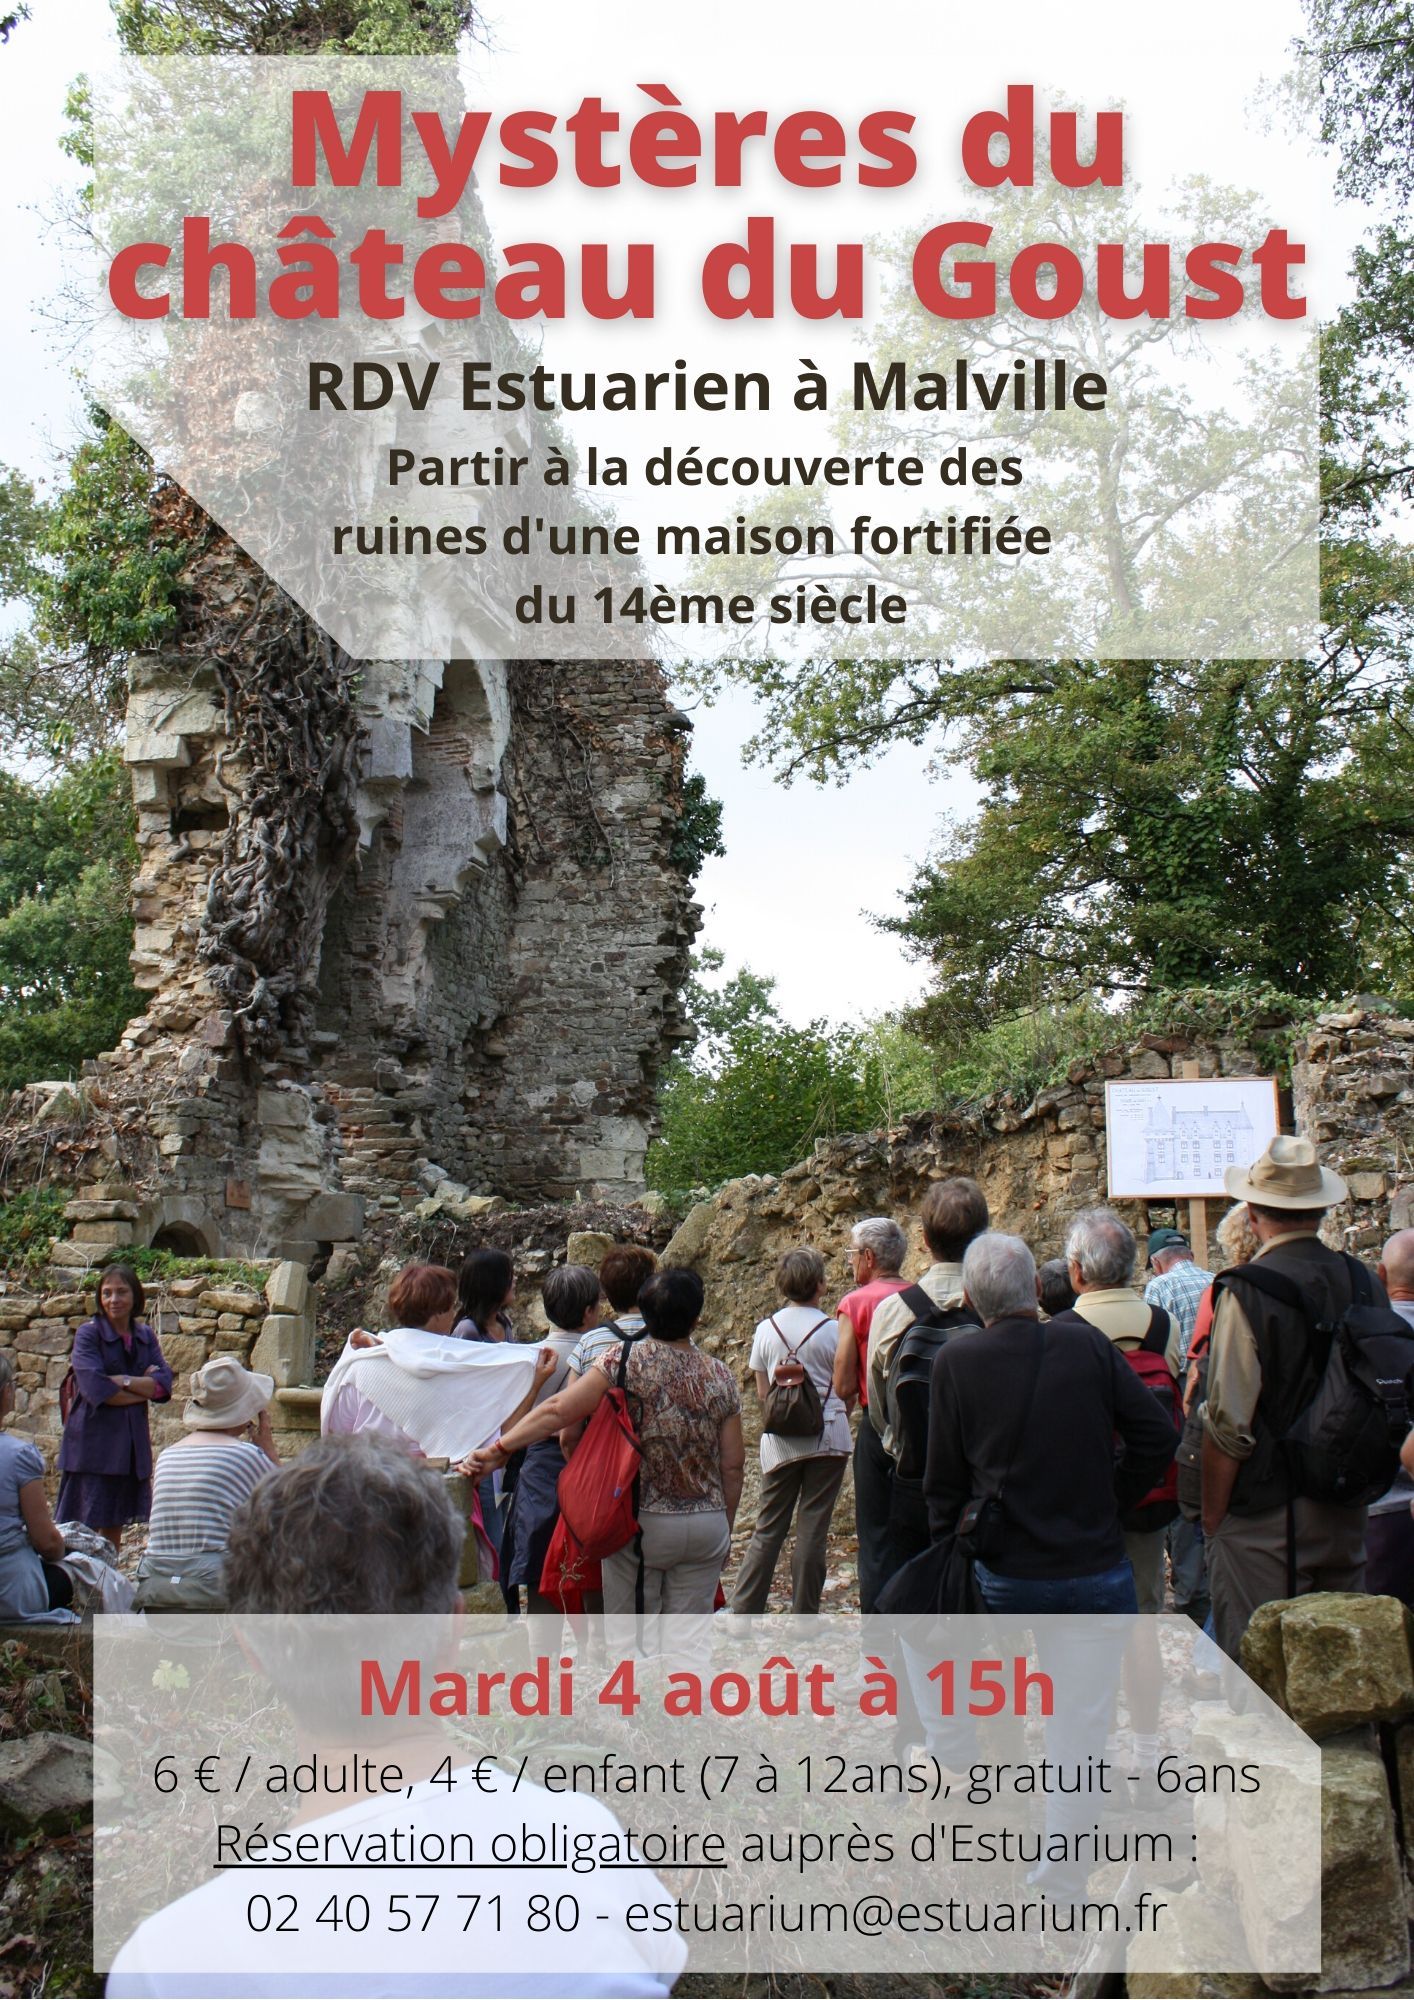 RDV Estuarien aout 2020 - Mystère chateau Goust - MALVILLE